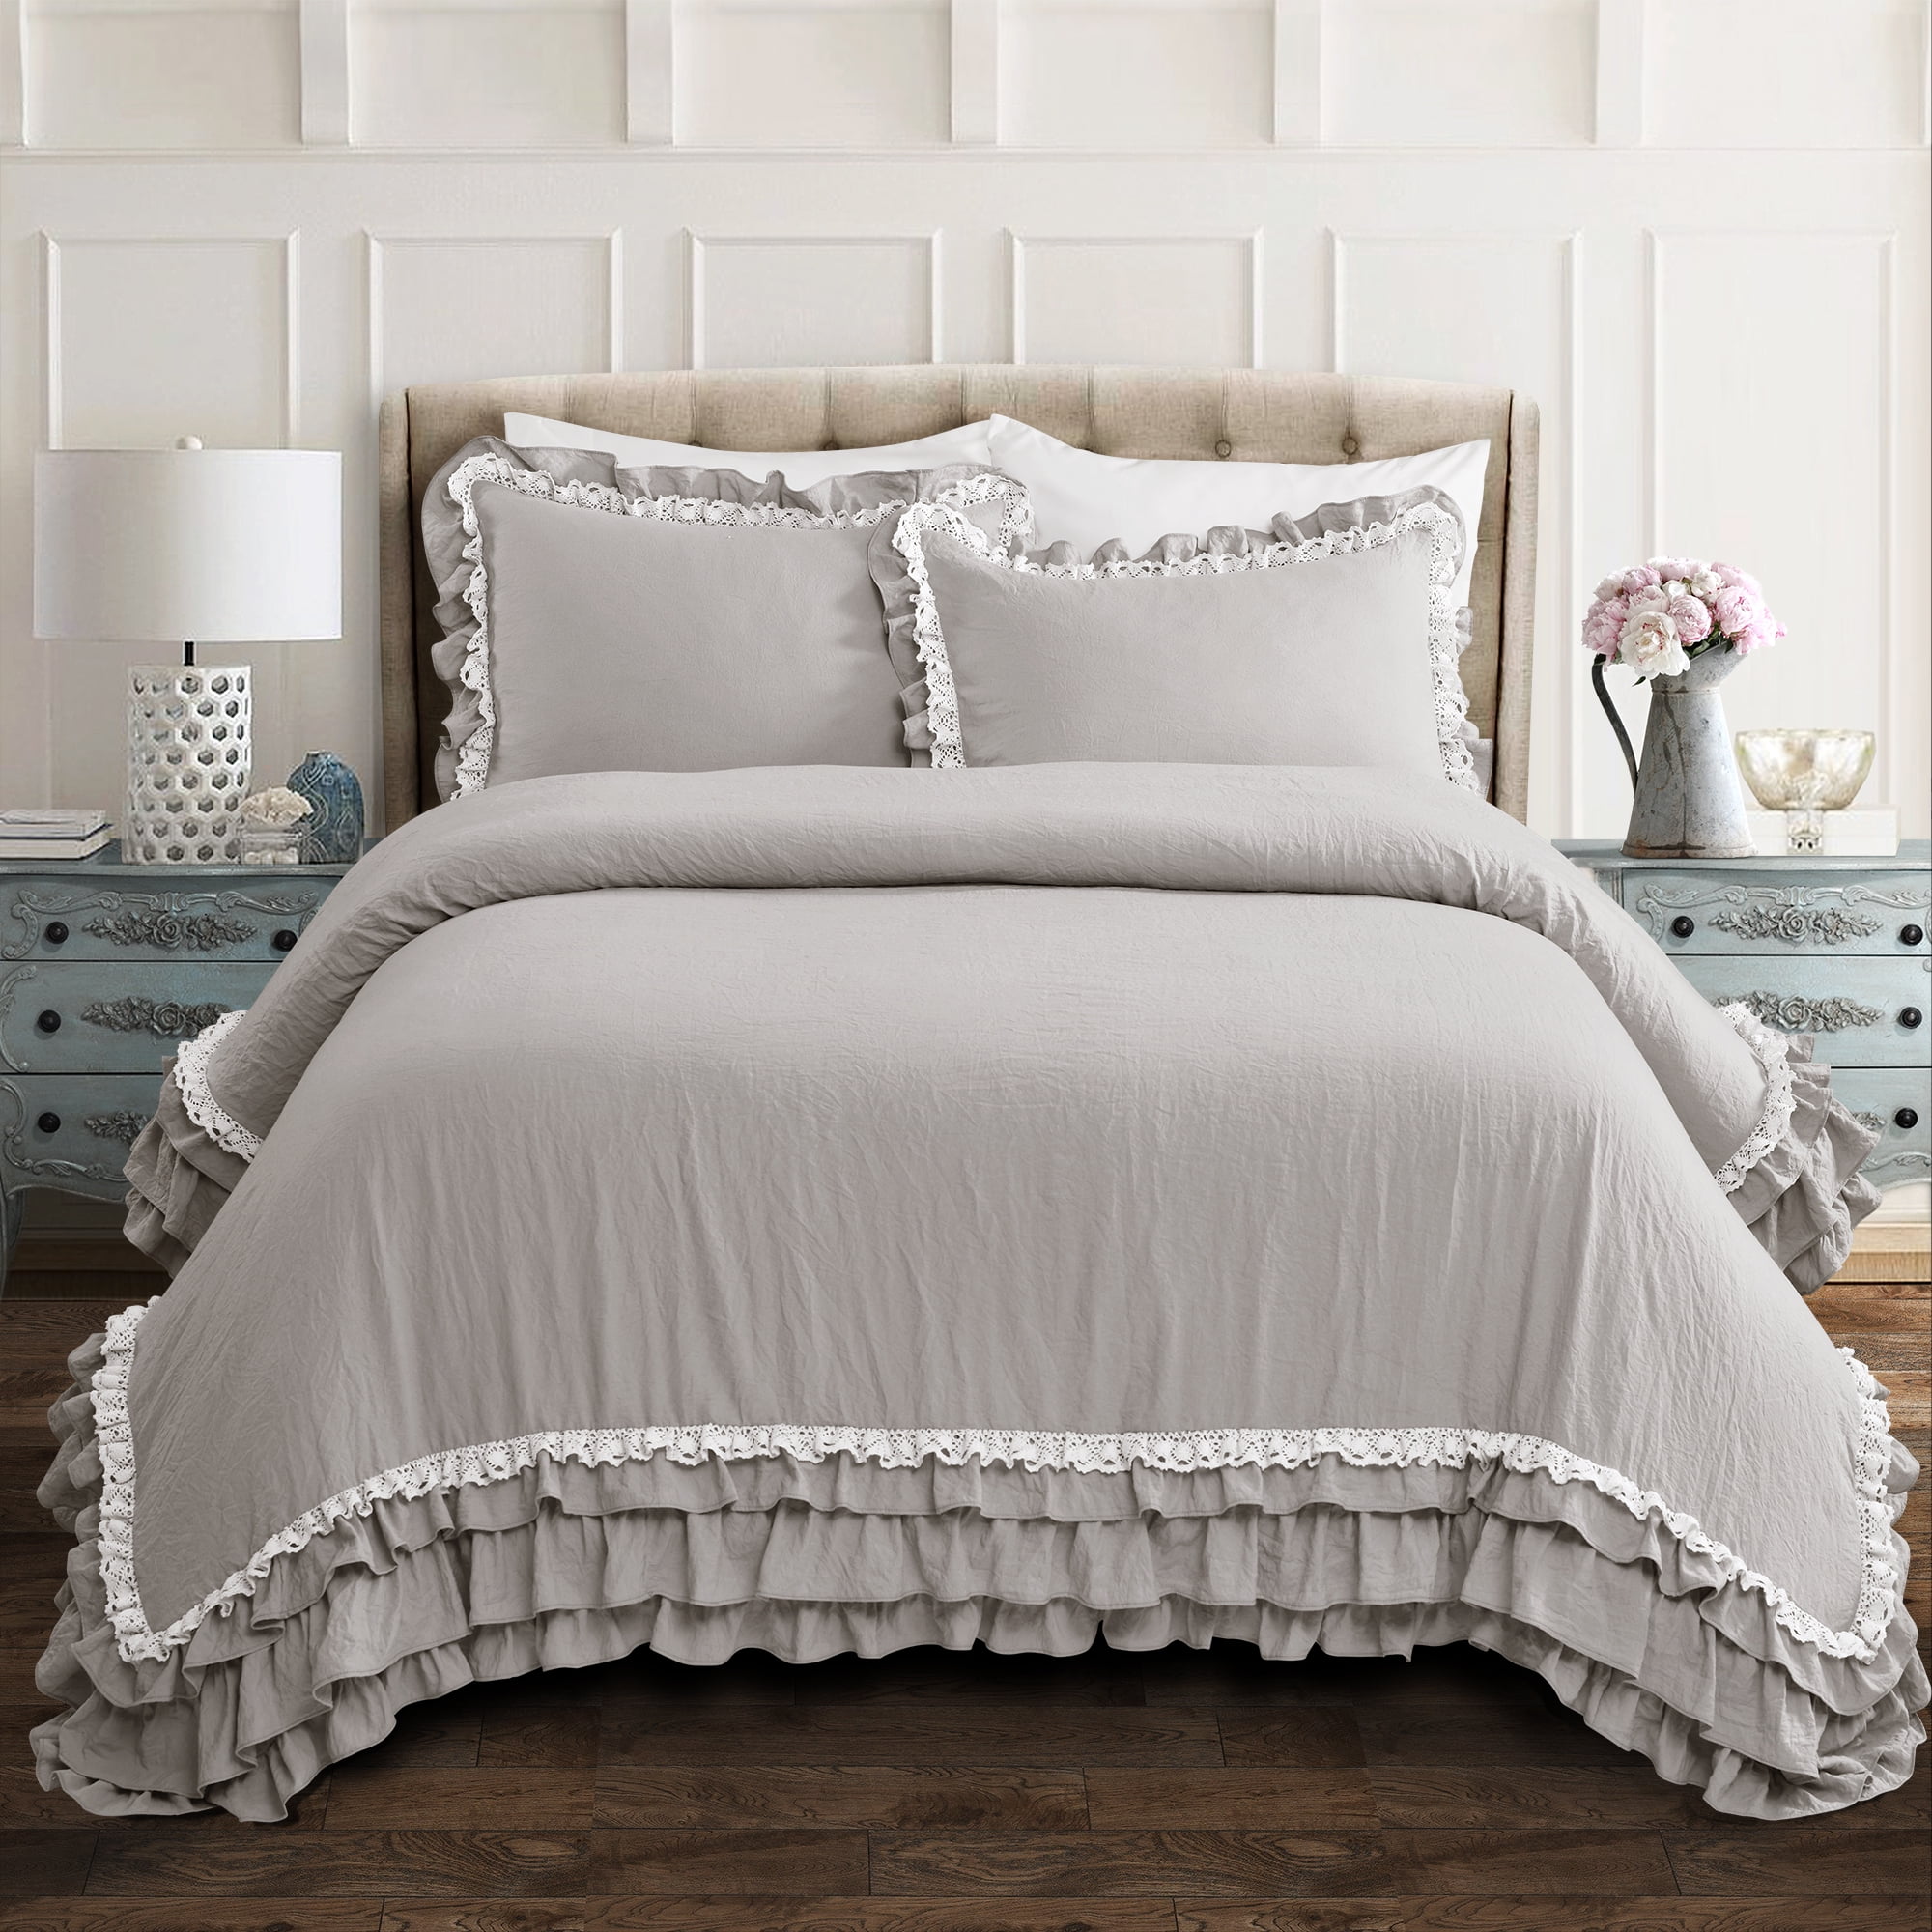 3 Pieces Gray Farmhouse Check Comforter Set with Pillow Shams 